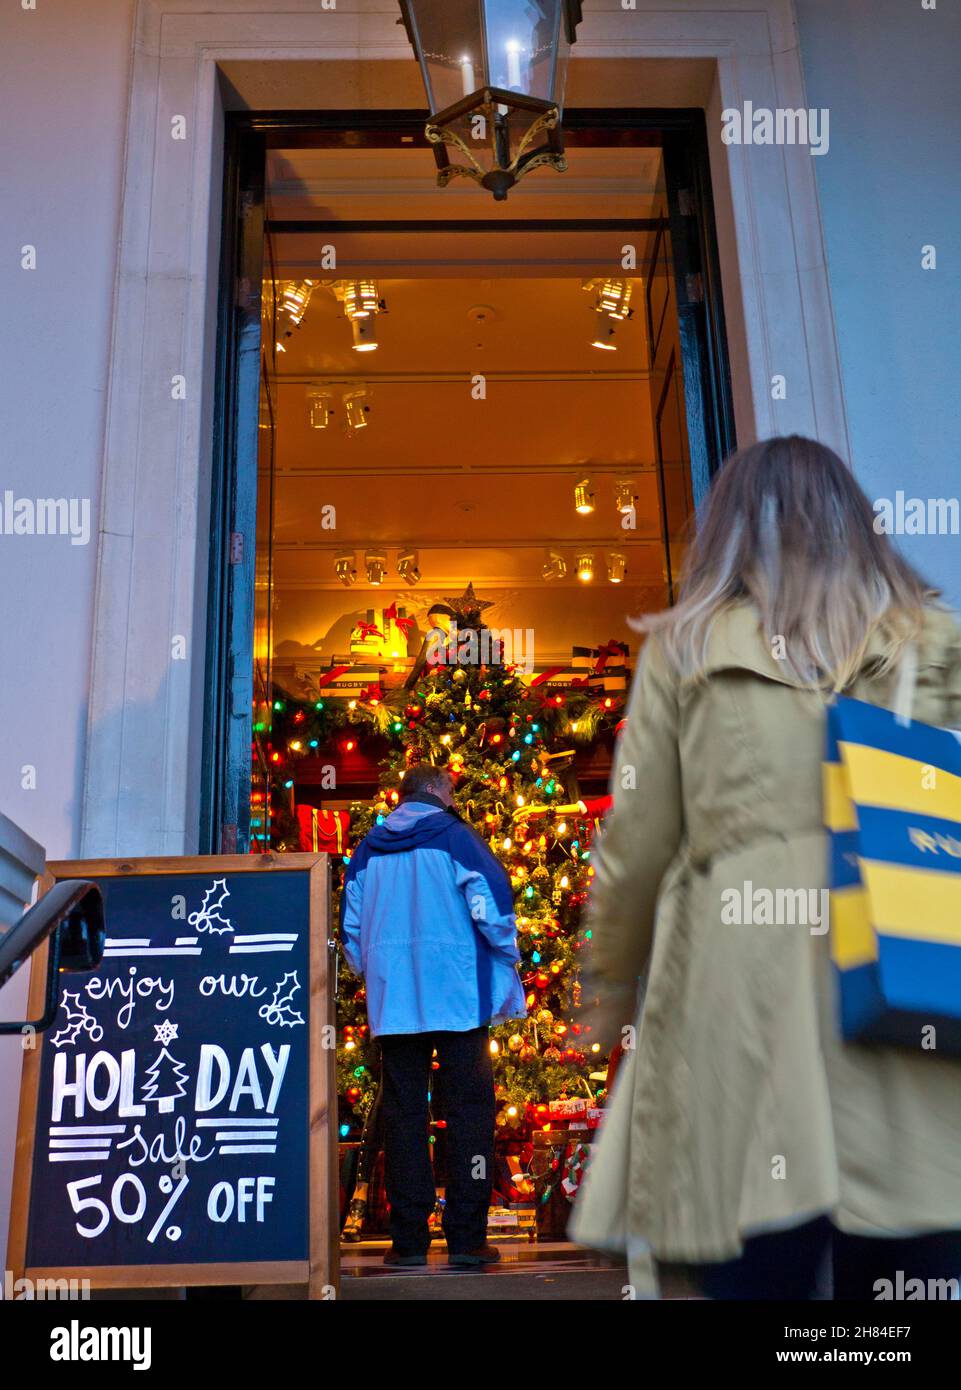 Covent Garden Weihnachtsverkäufe 50% Rabatt auf Einzelhandel Depression Weihnachtseinkäufe Saison . Frühzeitige Umsatzreduzierungen vor Weihnachten, um eine sehr schwierige volatile Handelssaison anzuregen London UK Stockfoto